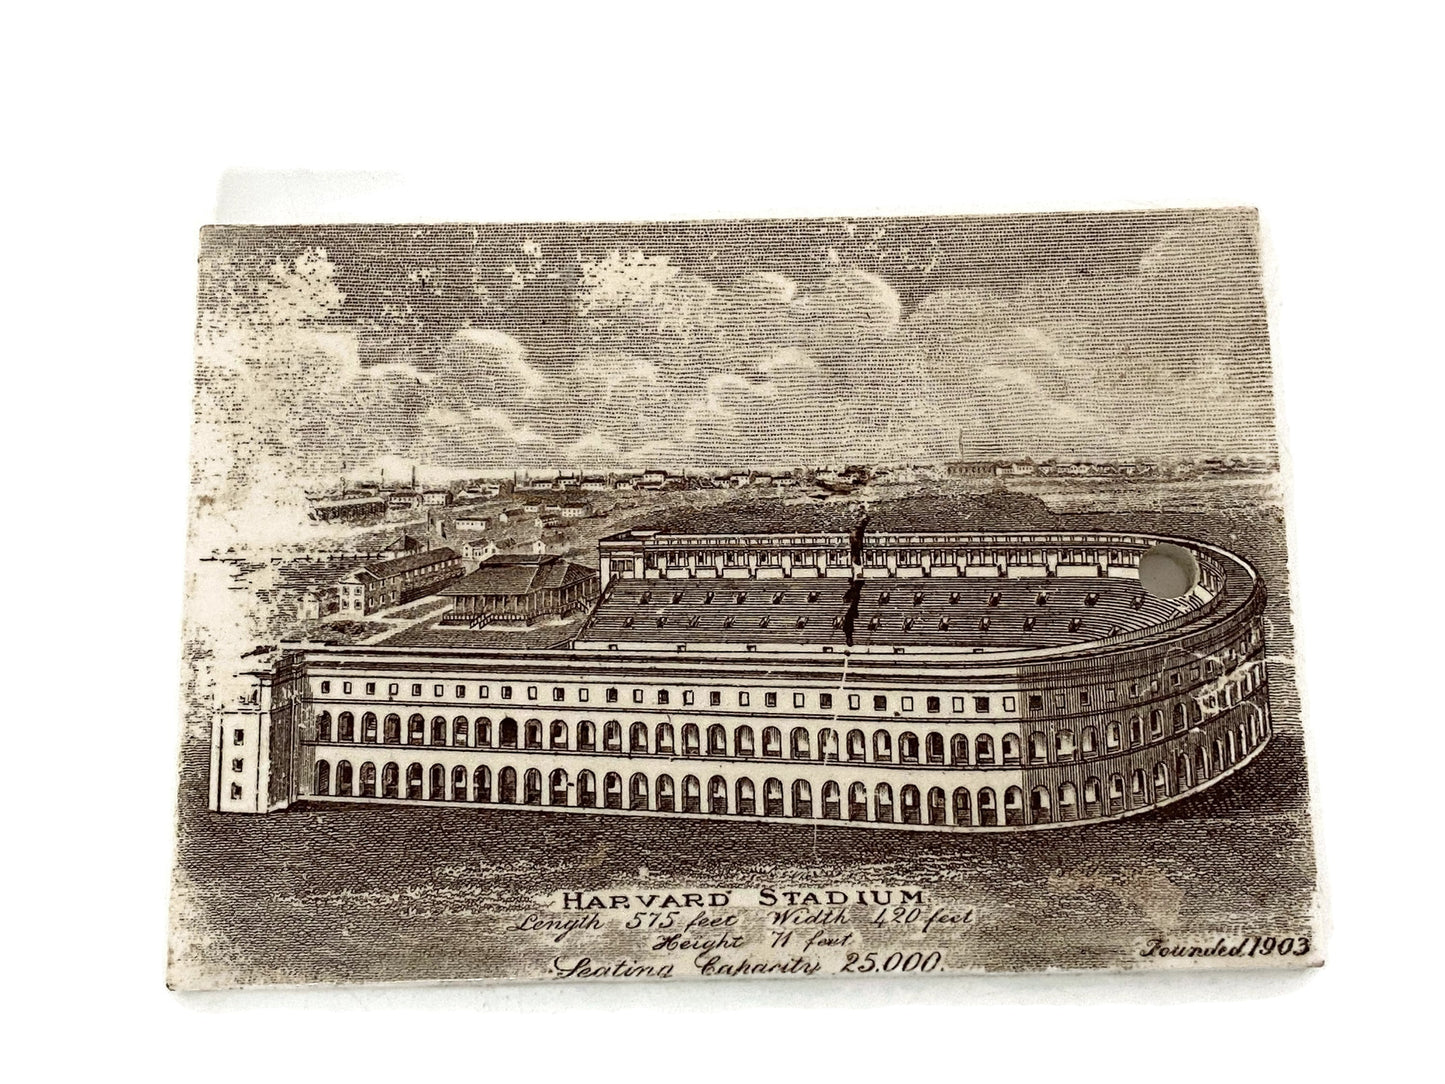 Antique Harvard Stadium Ceramic Calendar Tile